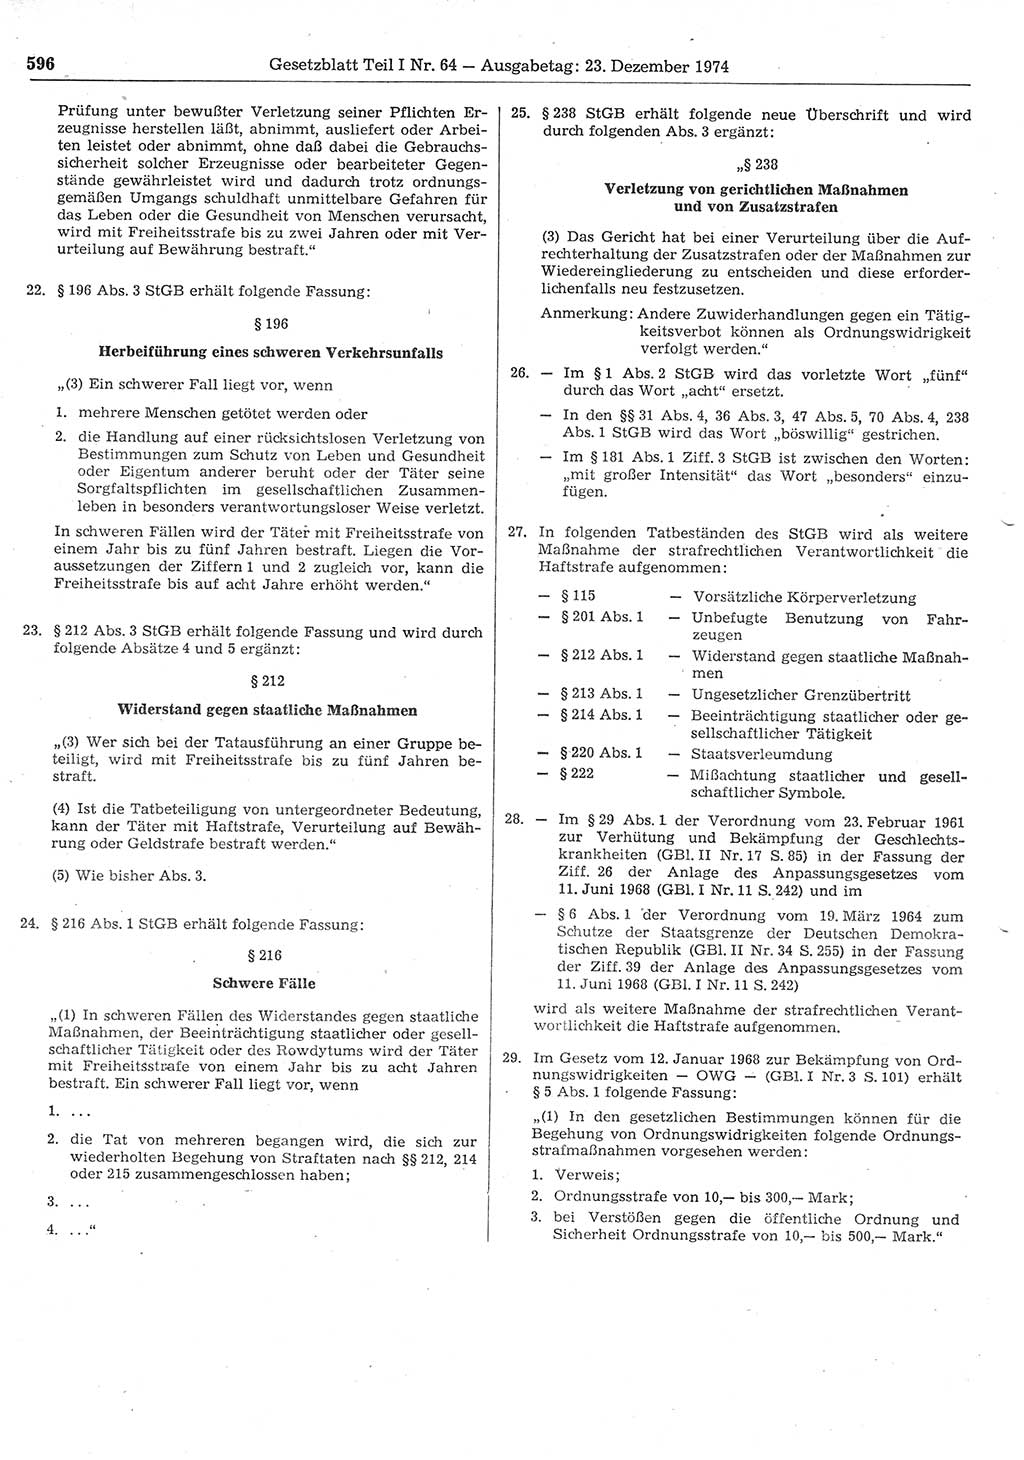 Gesetzblatt (GBl.) der Deutschen Demokratischen Republik (DDR) Teil Ⅰ 1974, Seite 596 (GBl. DDR Ⅰ 1974, S. 596)